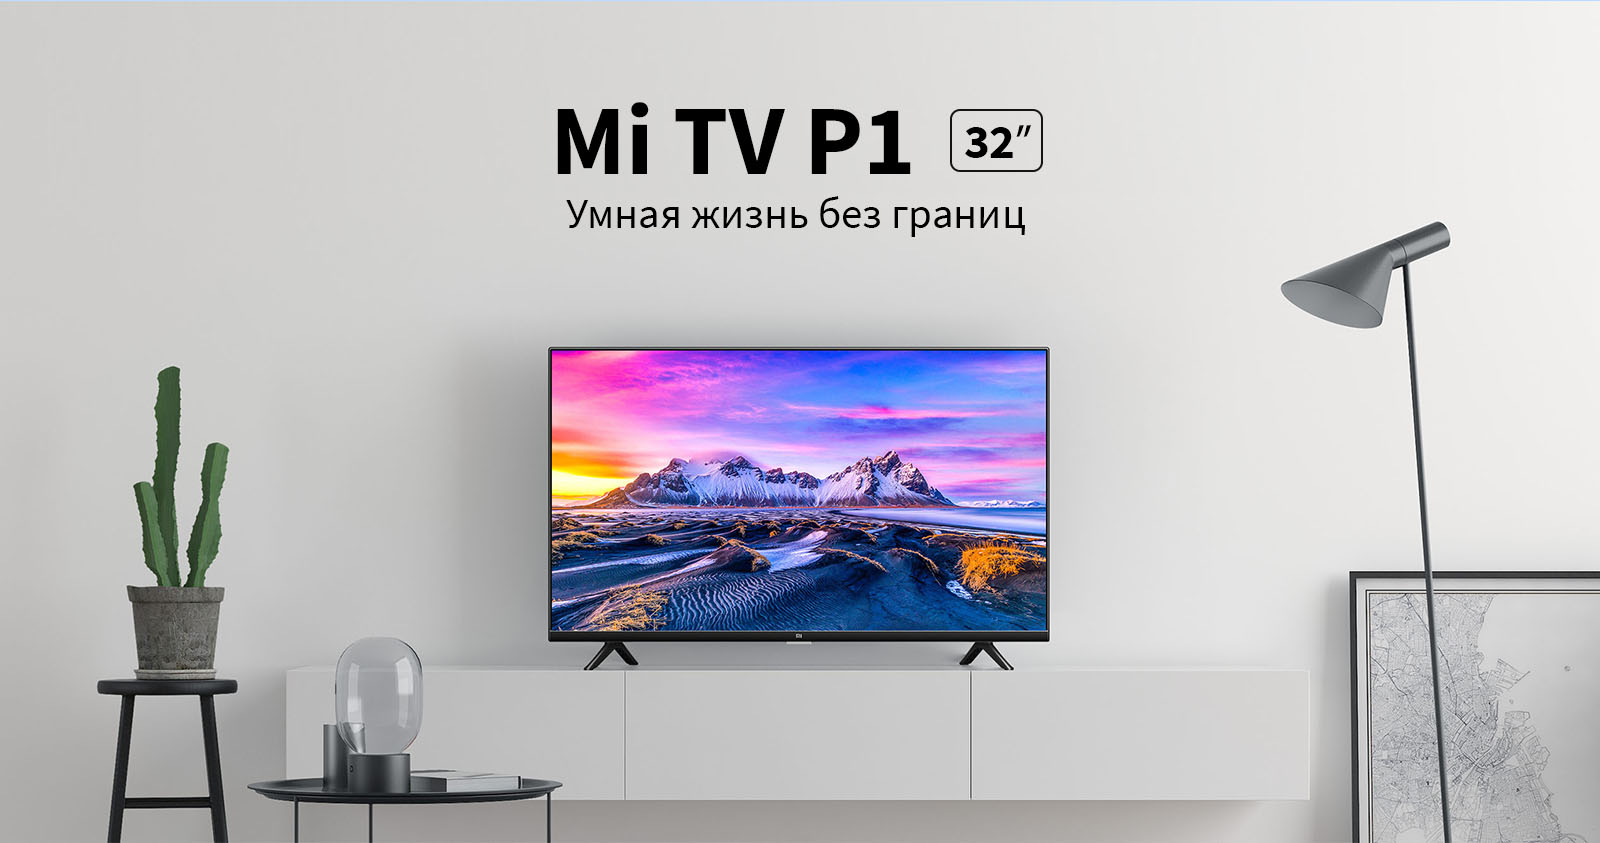 Mi TV P1 32